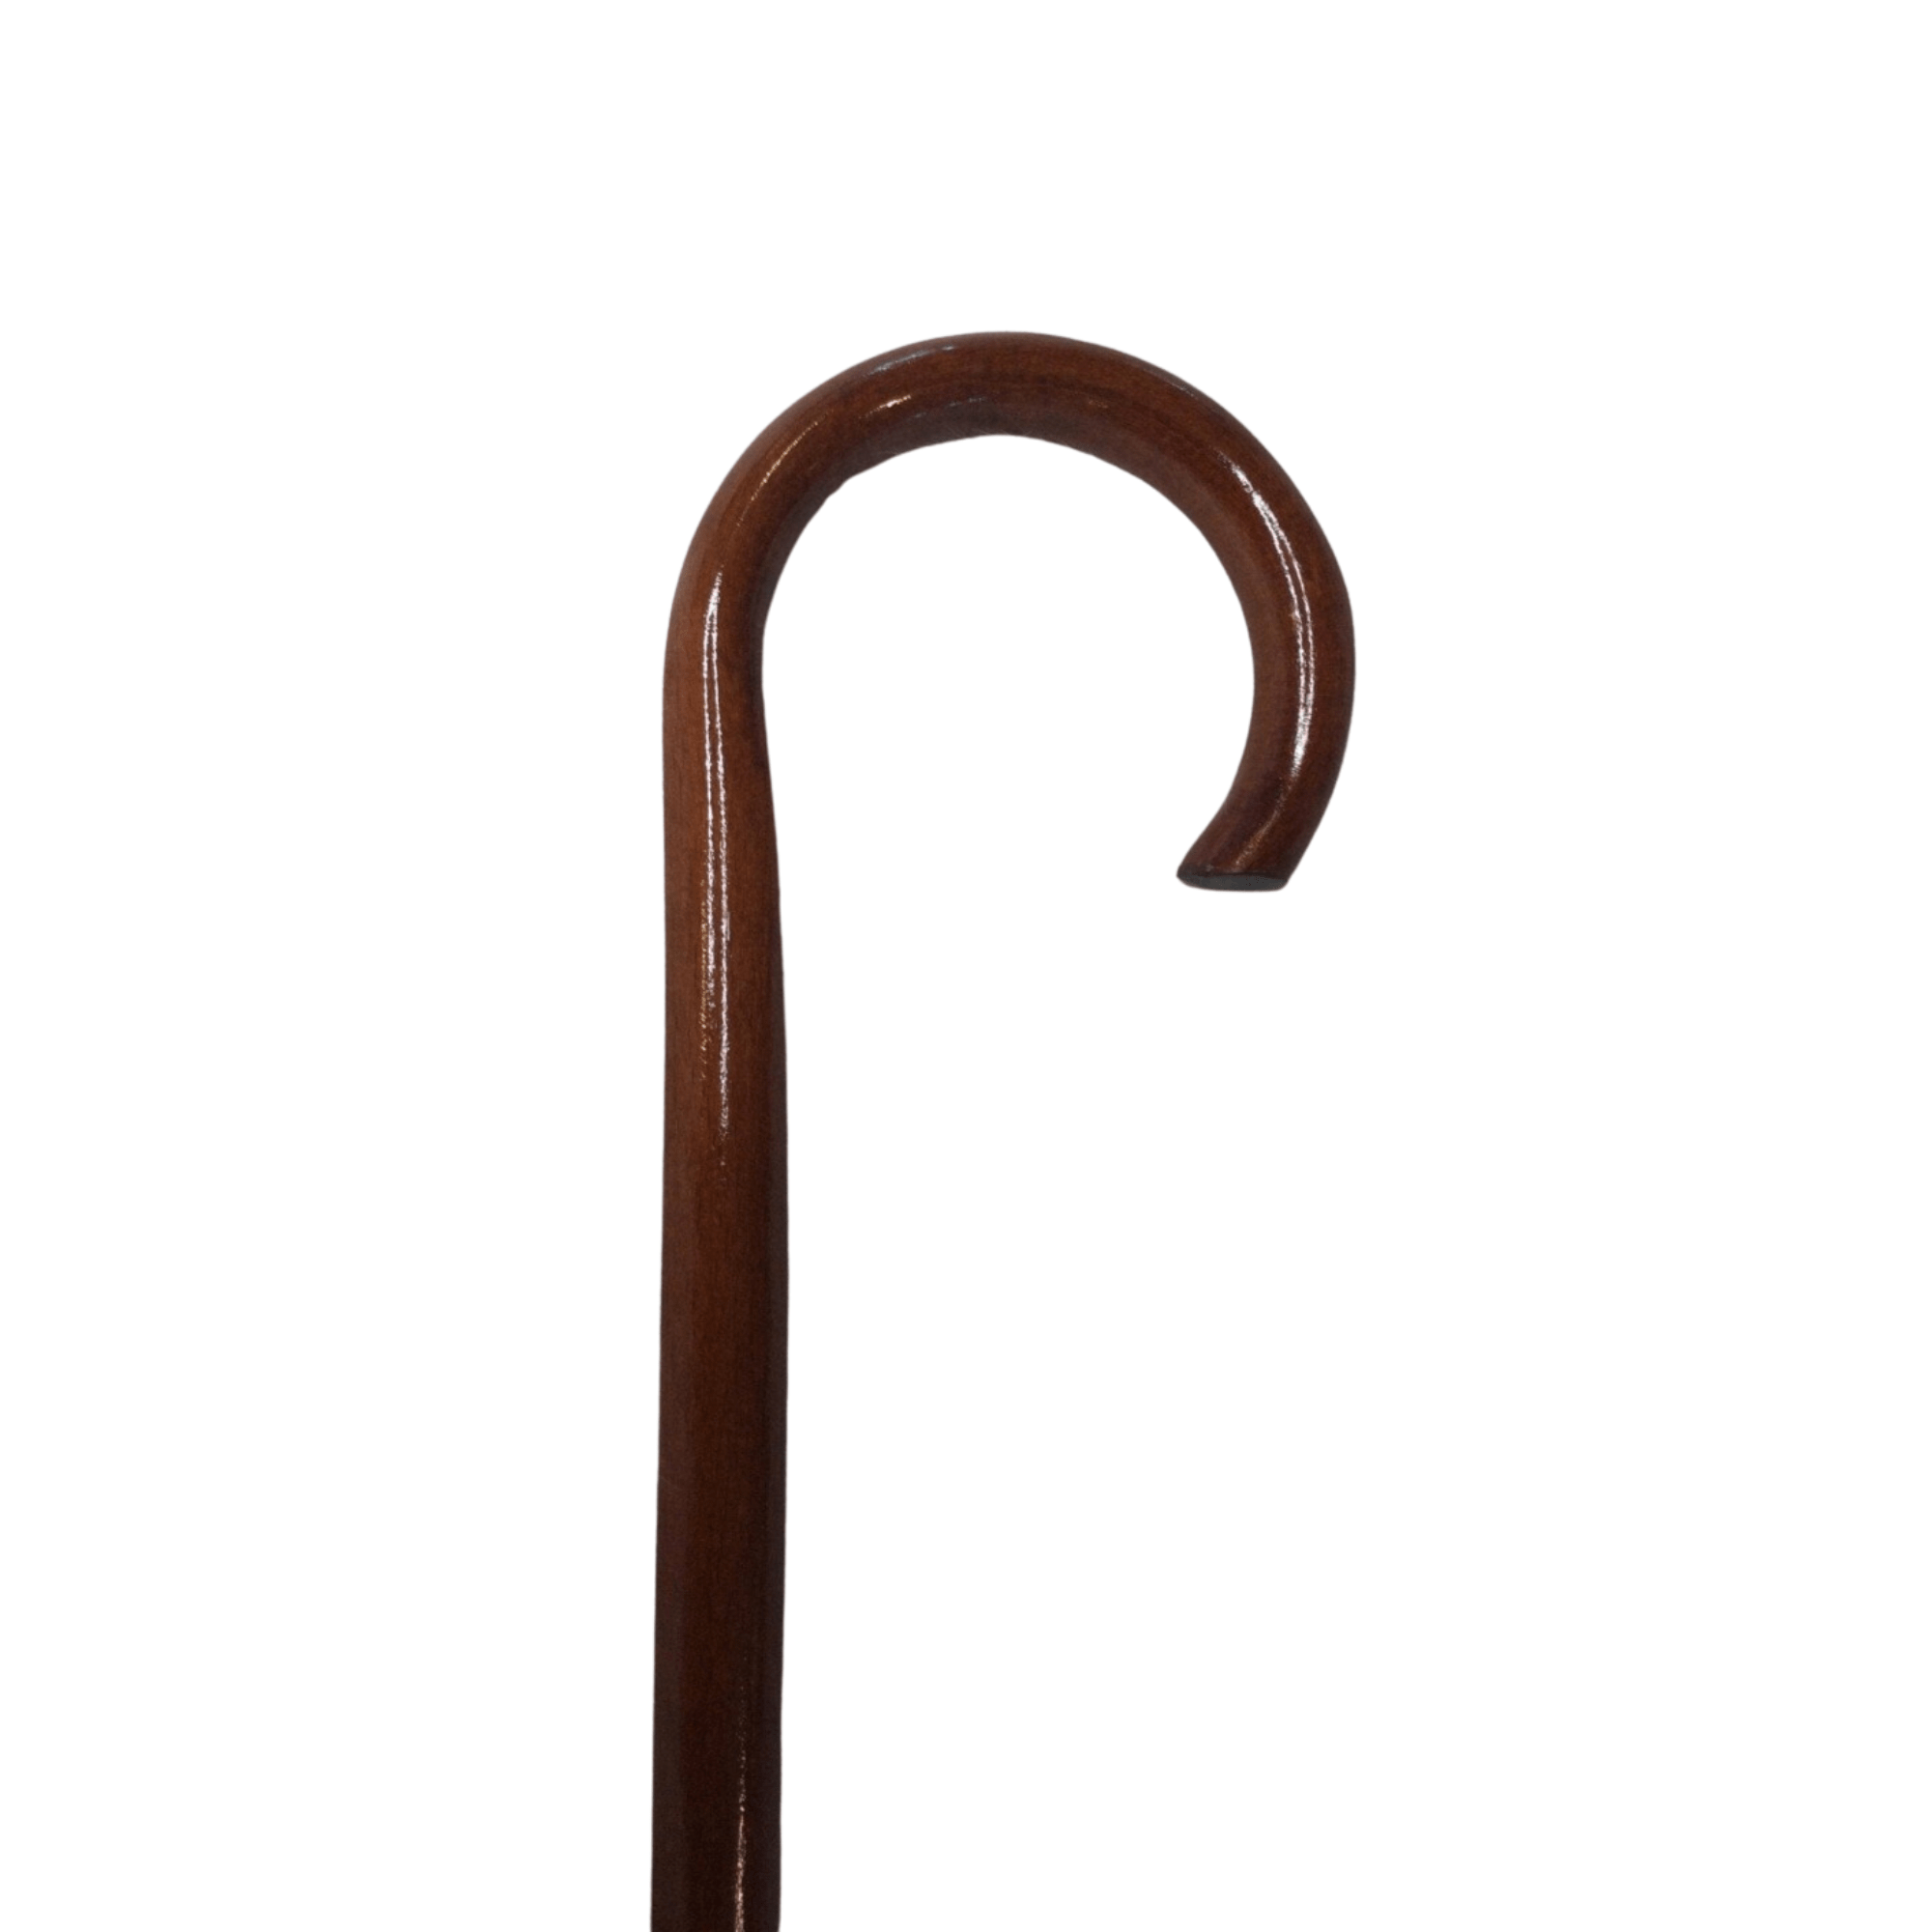 Luksus stok i mørkt træ - model GIETA med buet håndtag. 93 cm i højden